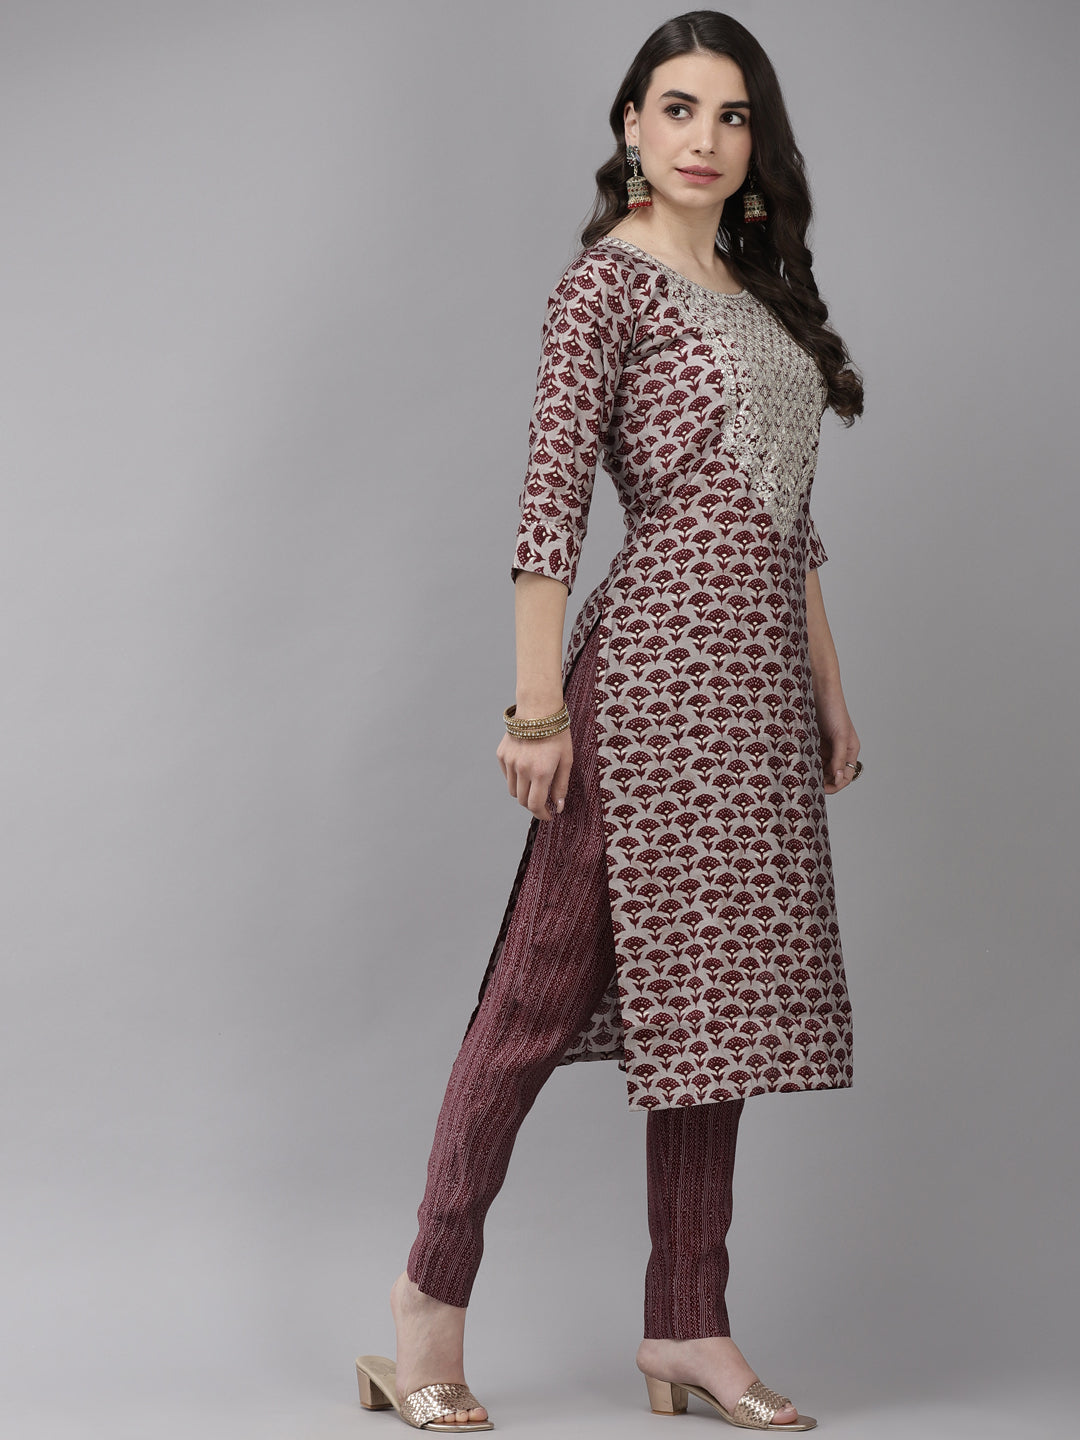 Women's Silk Blend Grey & Maroon Embroidered A-Line Kurta Trouser Dupatta Set - Navyaa